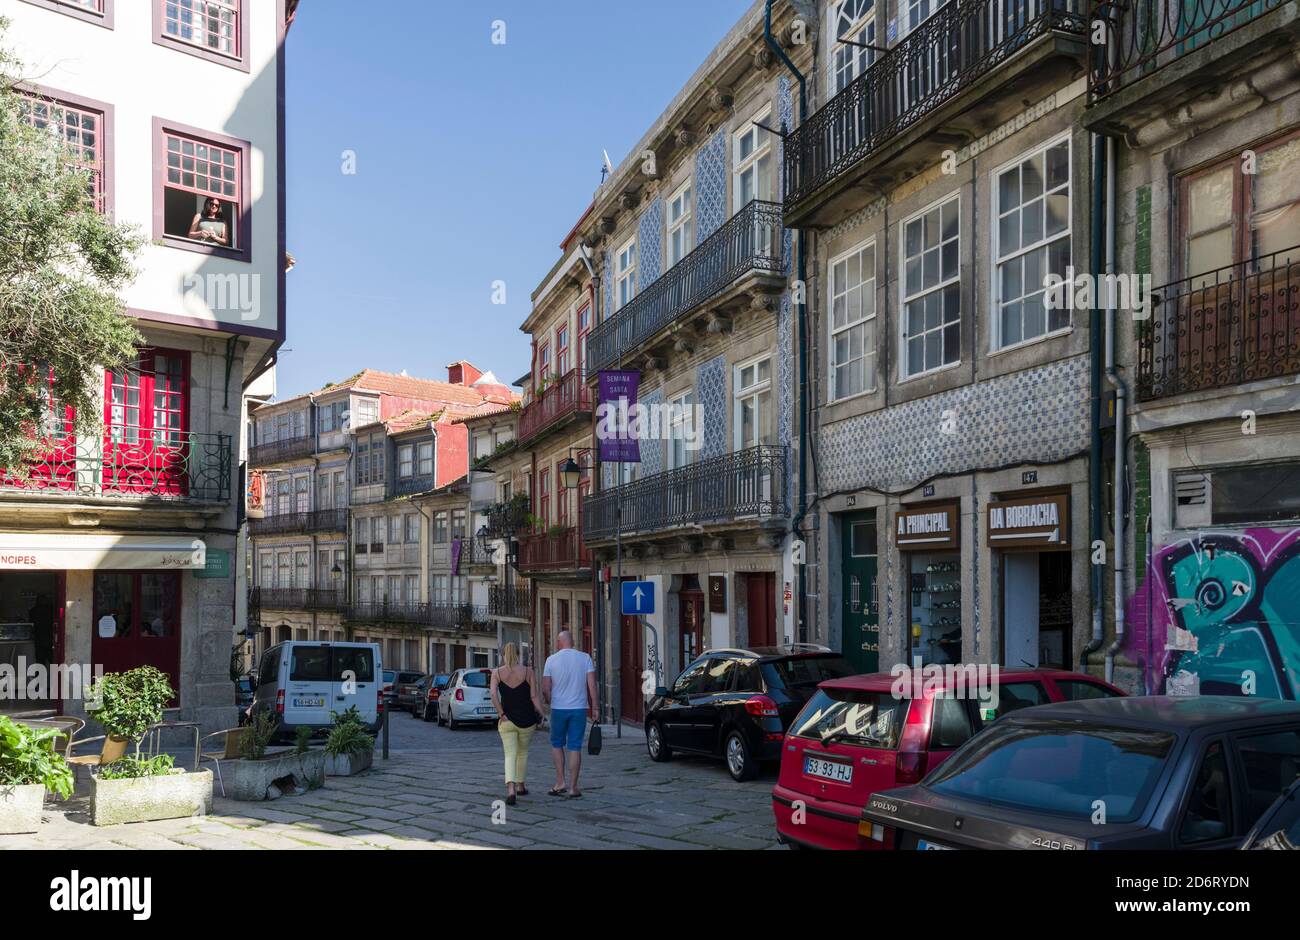 Die Altstadt. Stadt Porto (Porto) in Rio Douro im Norden Portugals. Die Altstadt ist zum UNESCO-Weltkulturerbe erklärt. Europa, Südeuropa, Por Stockfoto